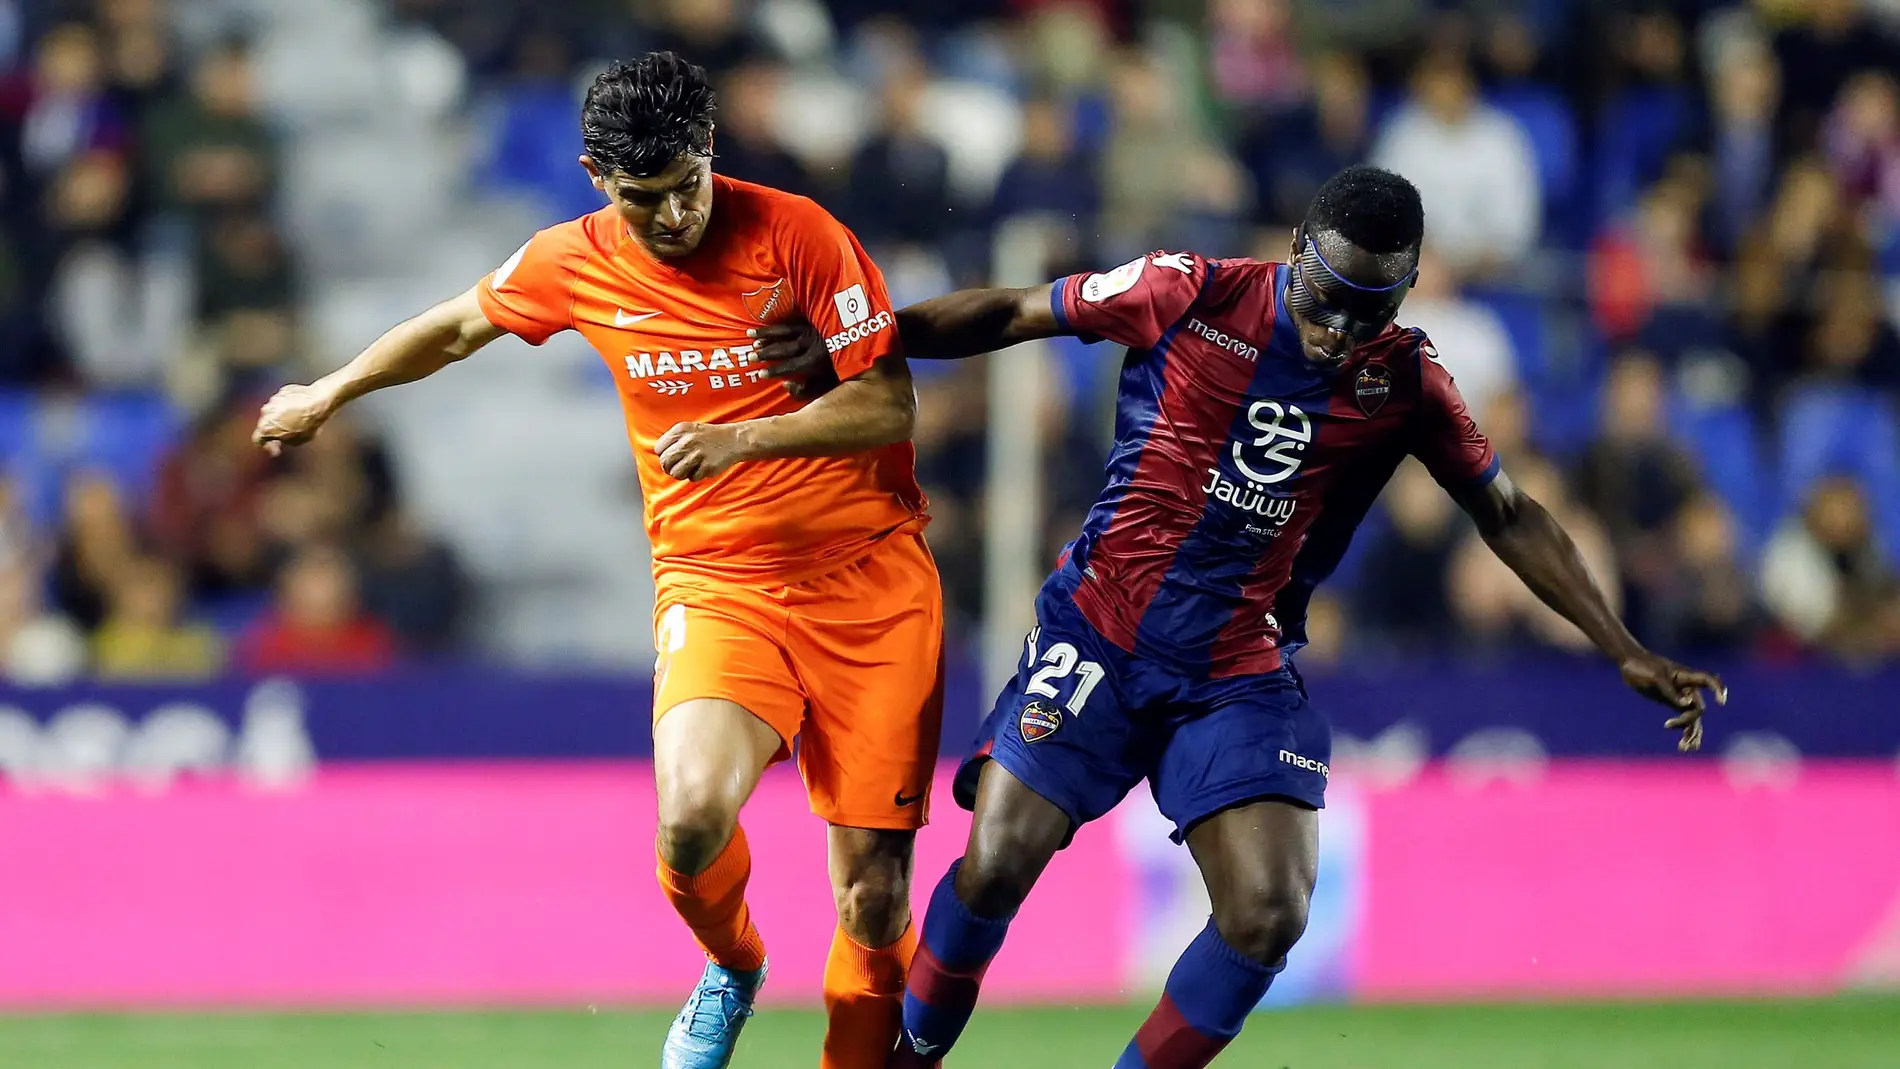 Chory y Boateng disputan el balón durante el Levante - Málaga